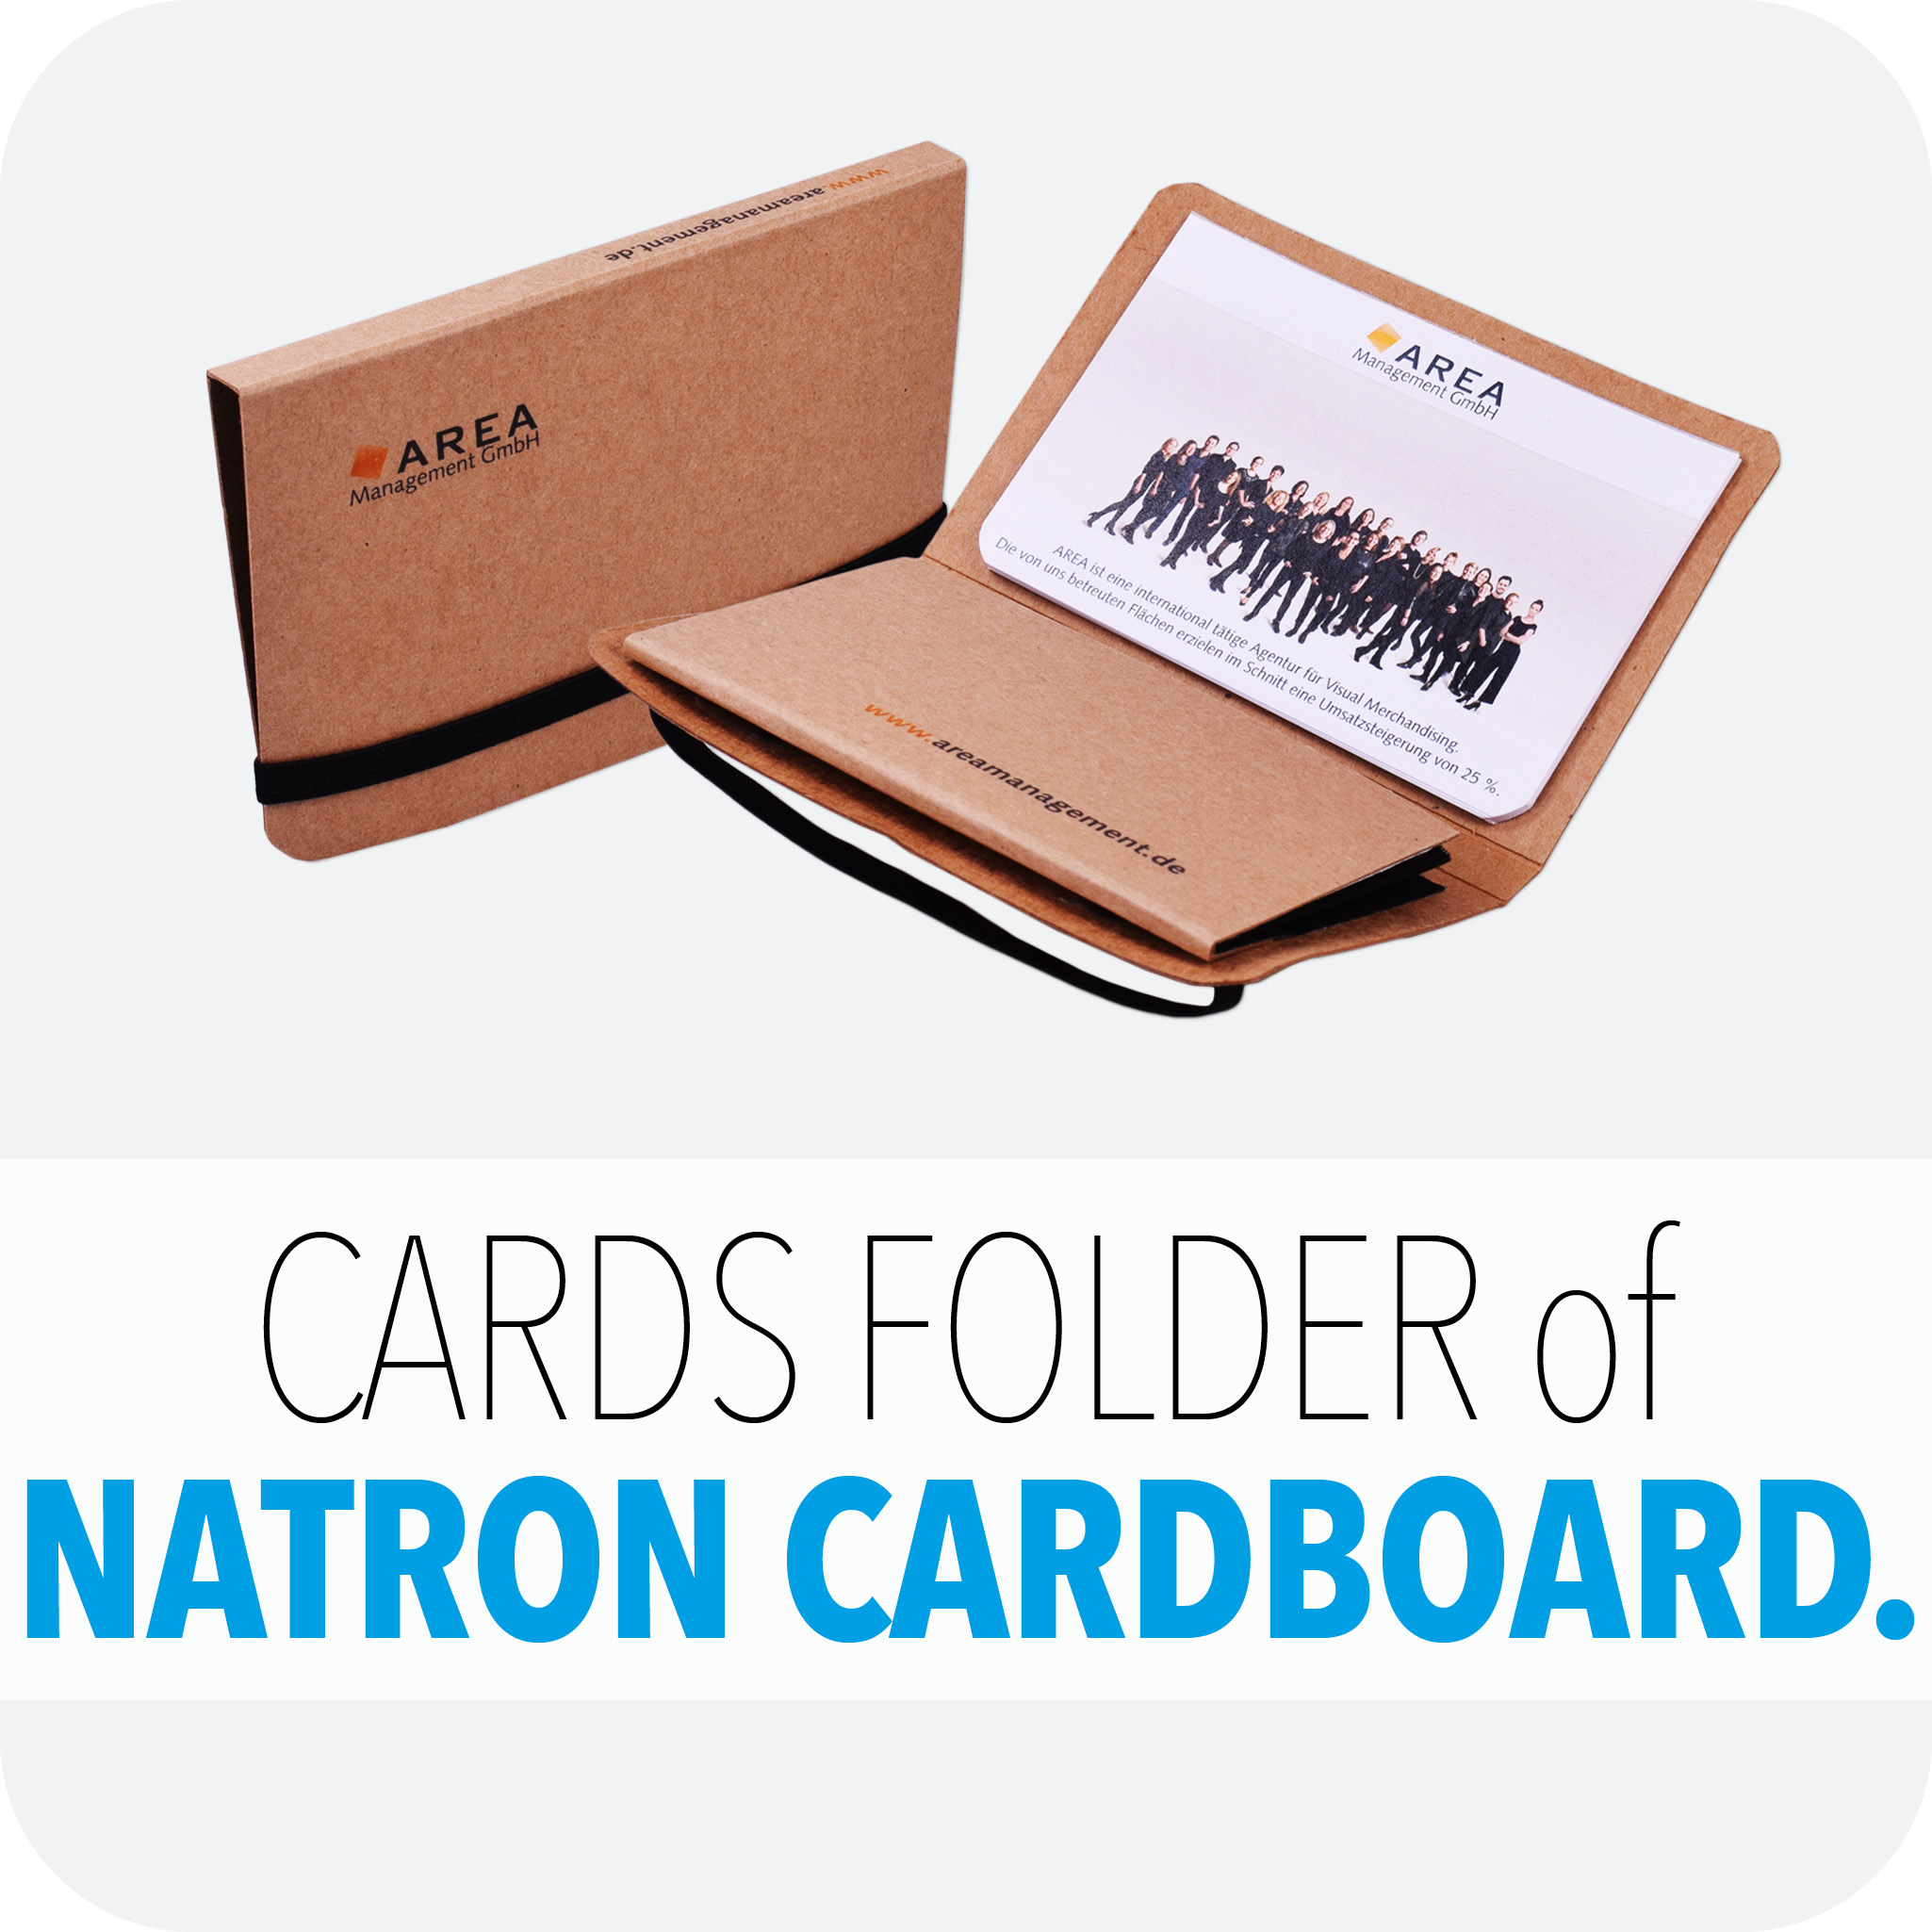 Cards folder natron cardboard